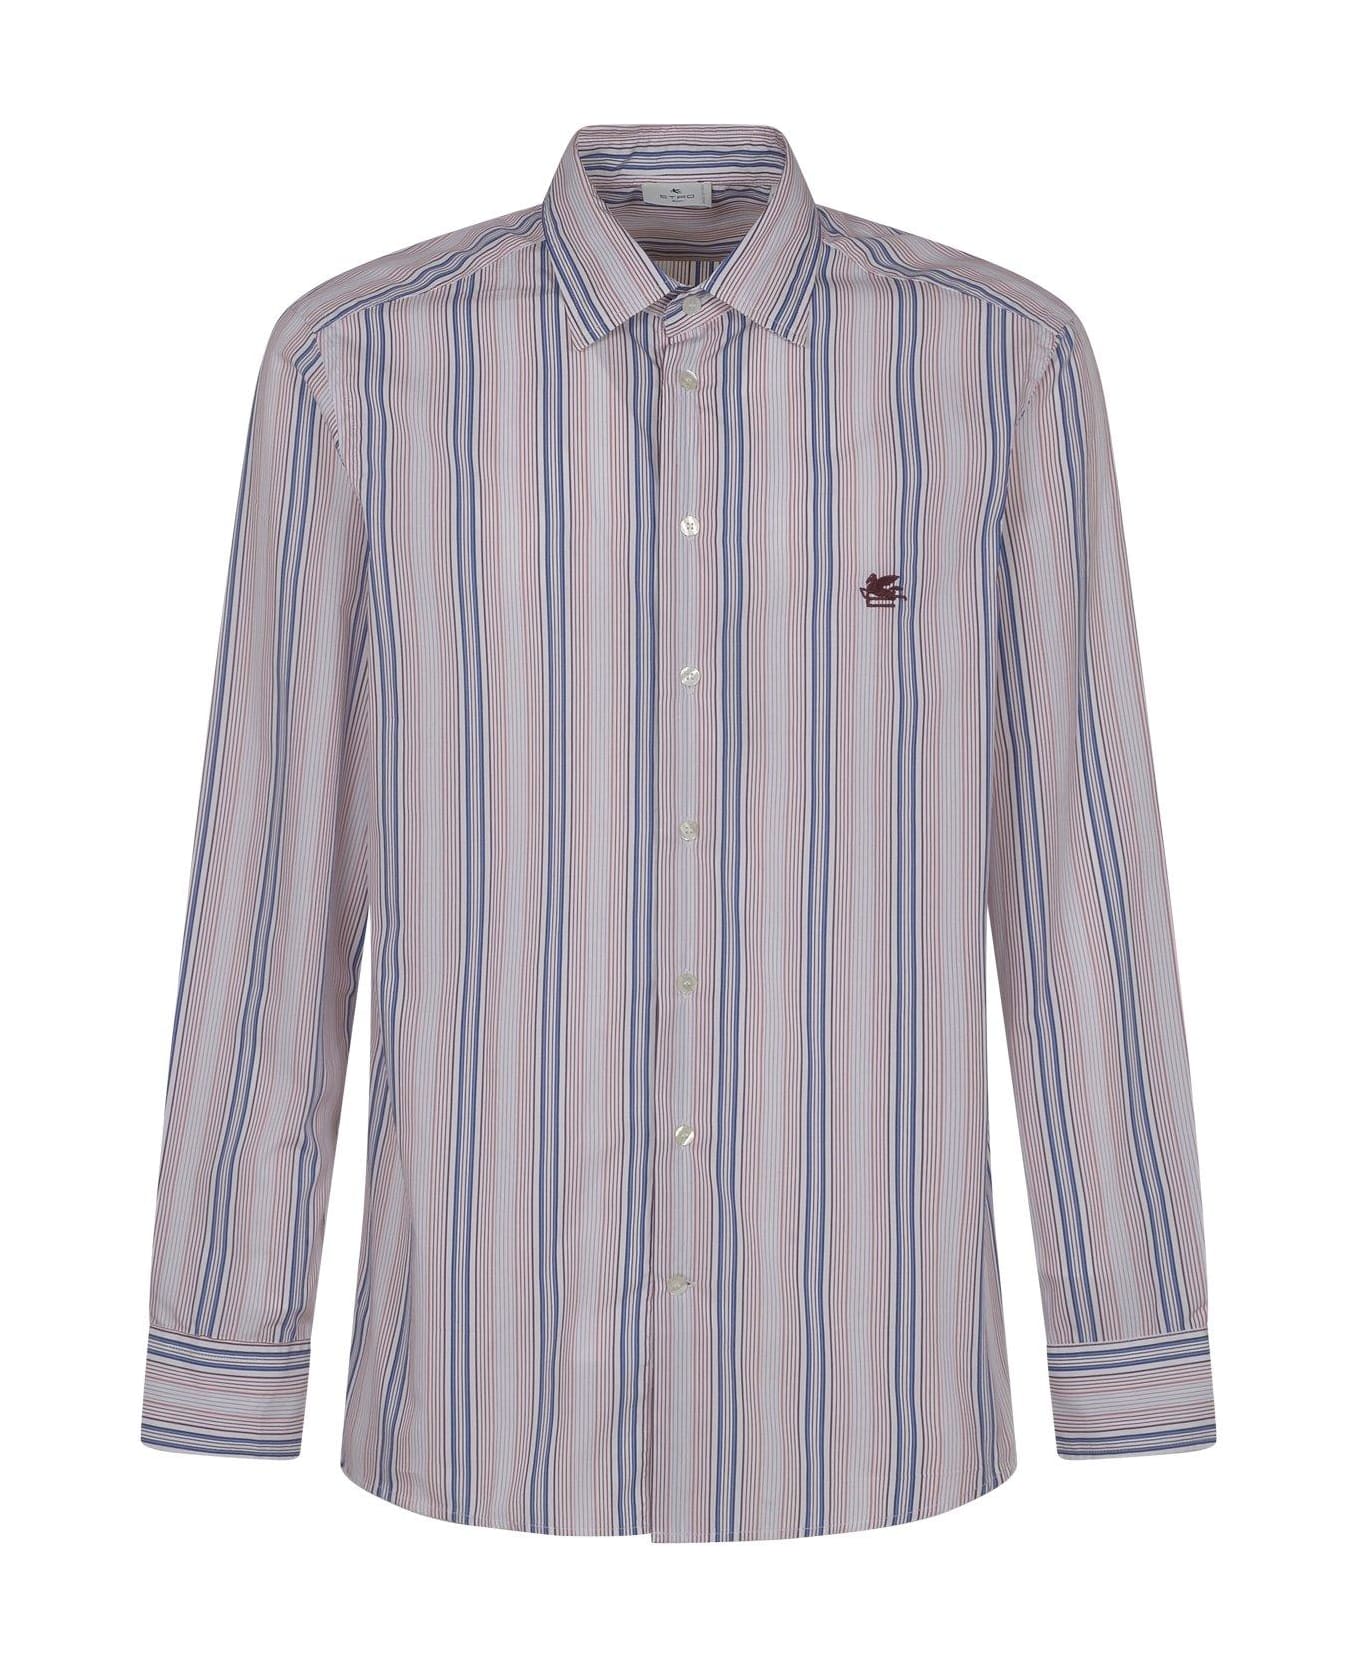 Etro Pegaso Embroidered Striped Shirt - BLUE/WHITE